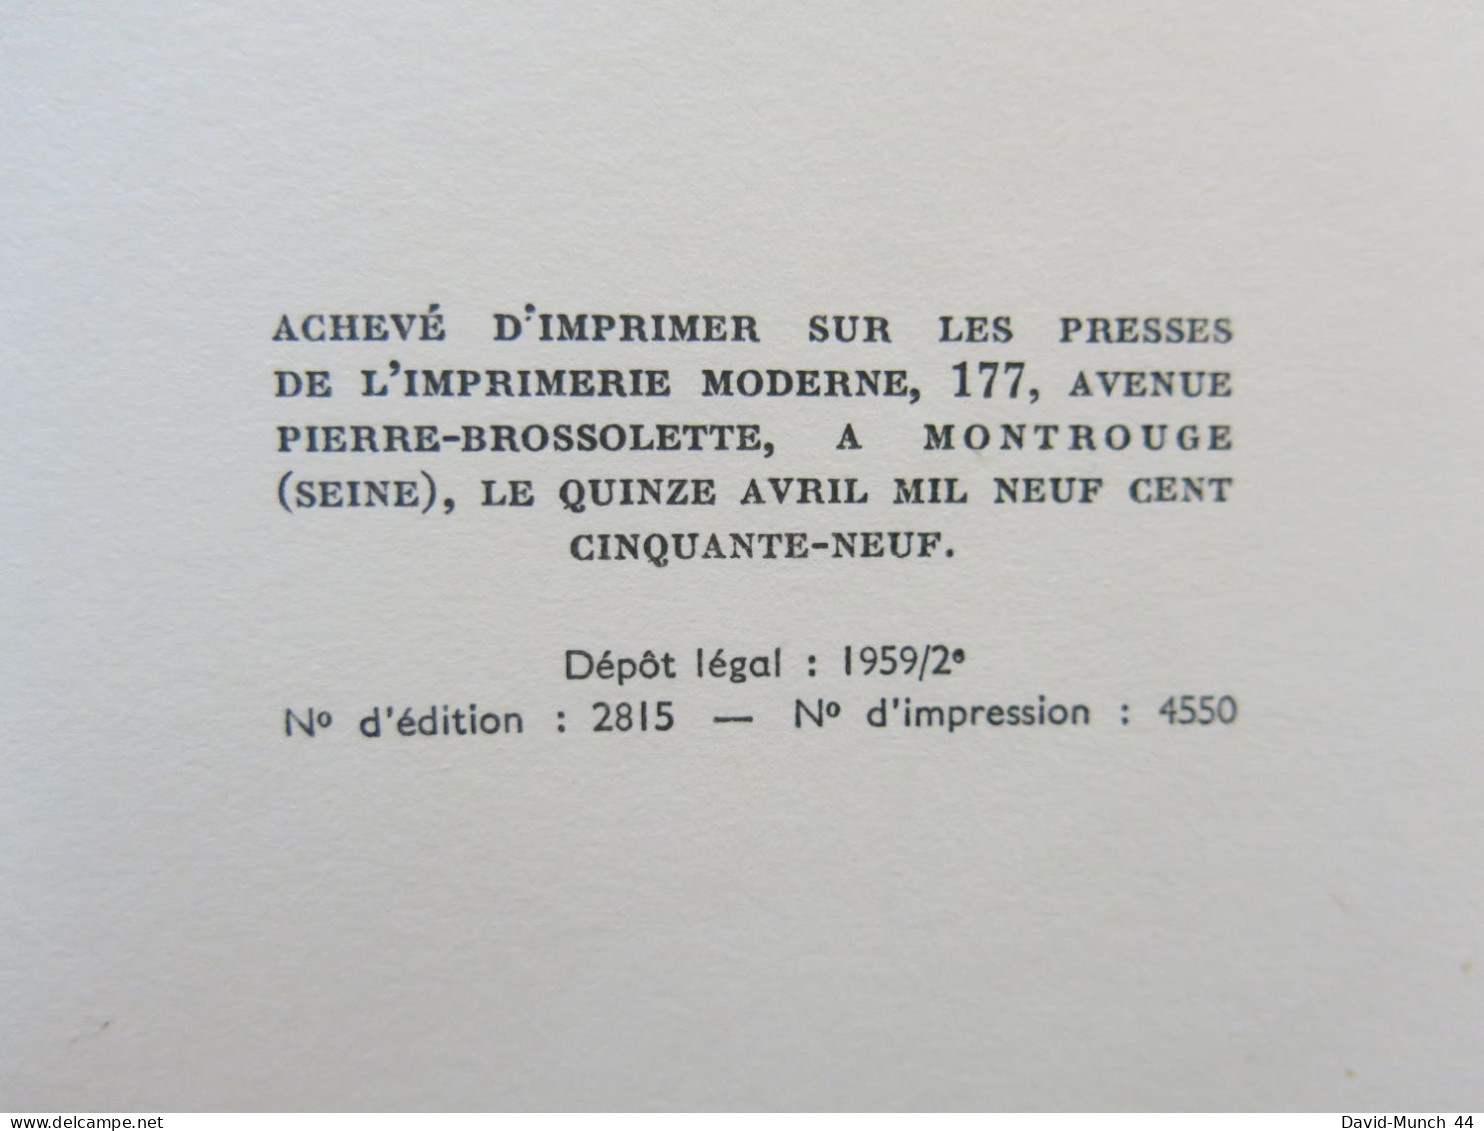 Saint Naïf de Paul Guth. Editions Albin Michel. 1959, exemplaire dédicacé par l'auteur